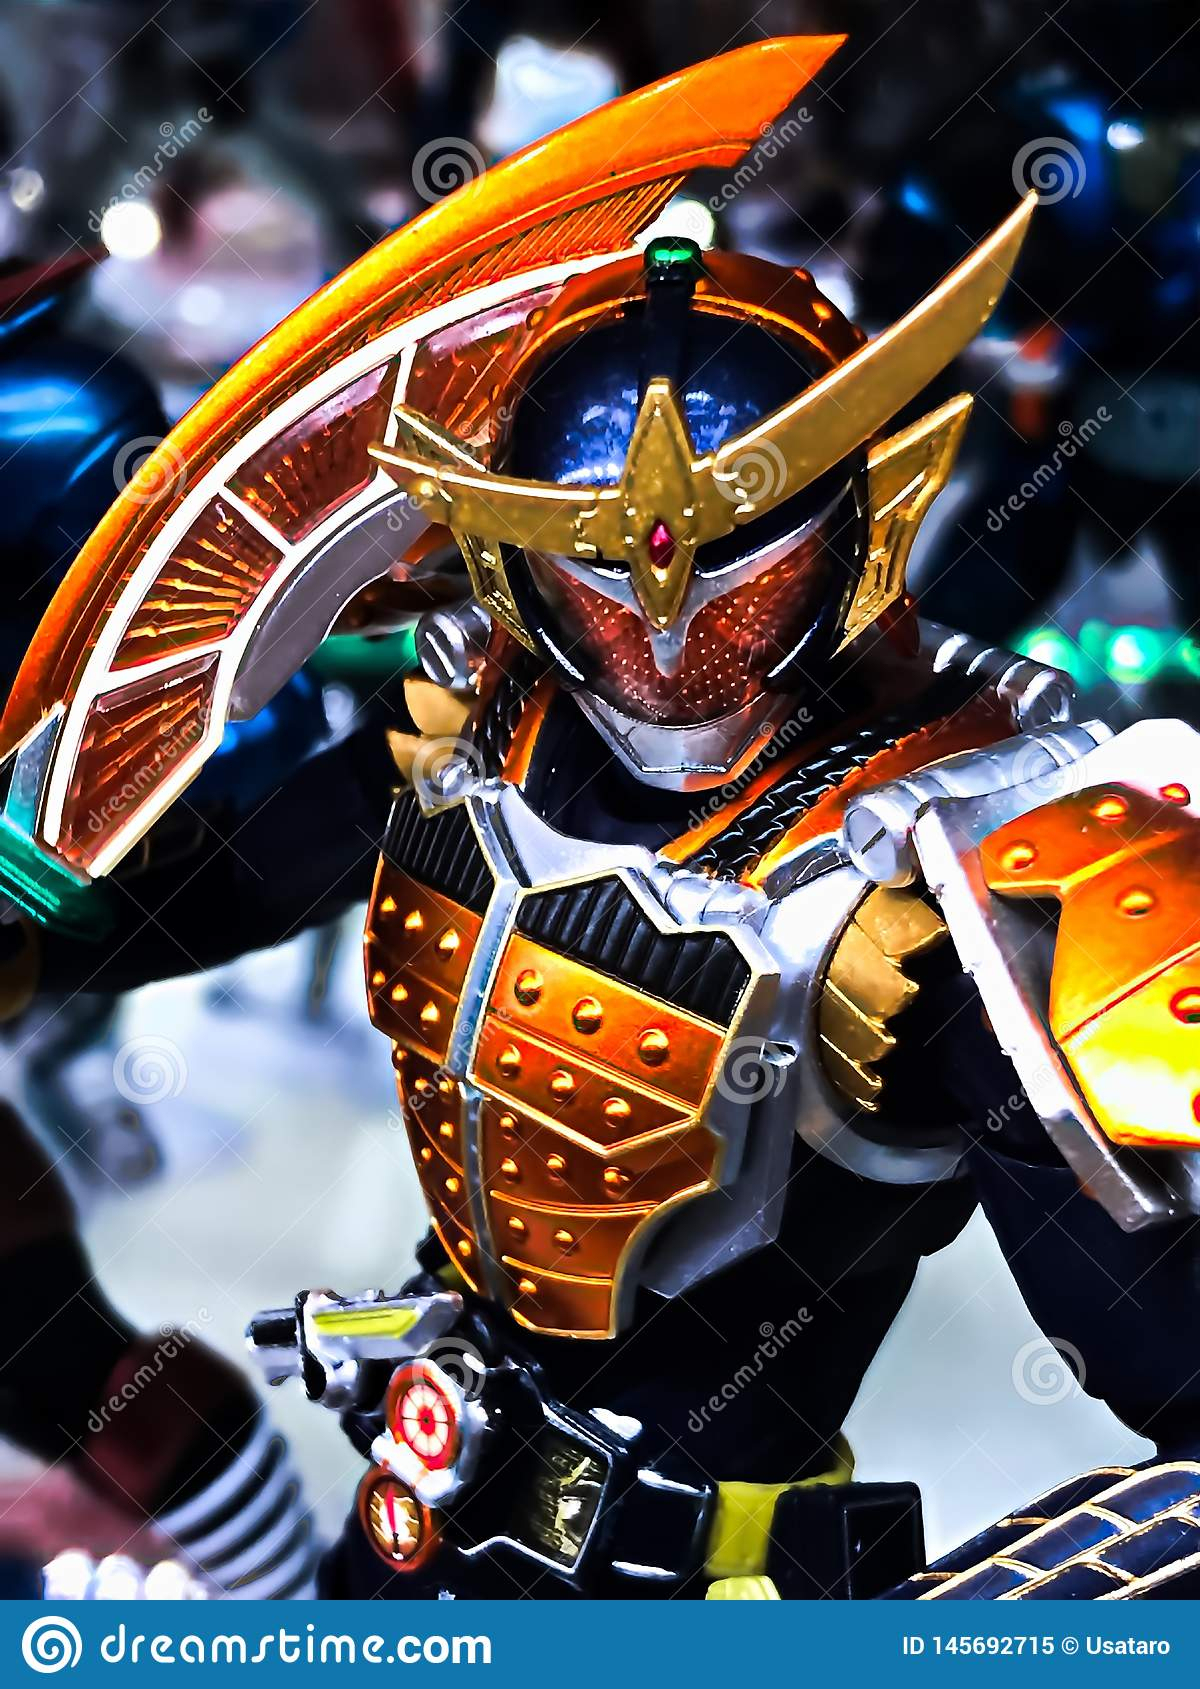 Character Name Is Kamen Rider Gaim. Editorial Image pour Kamen Rider Gaim